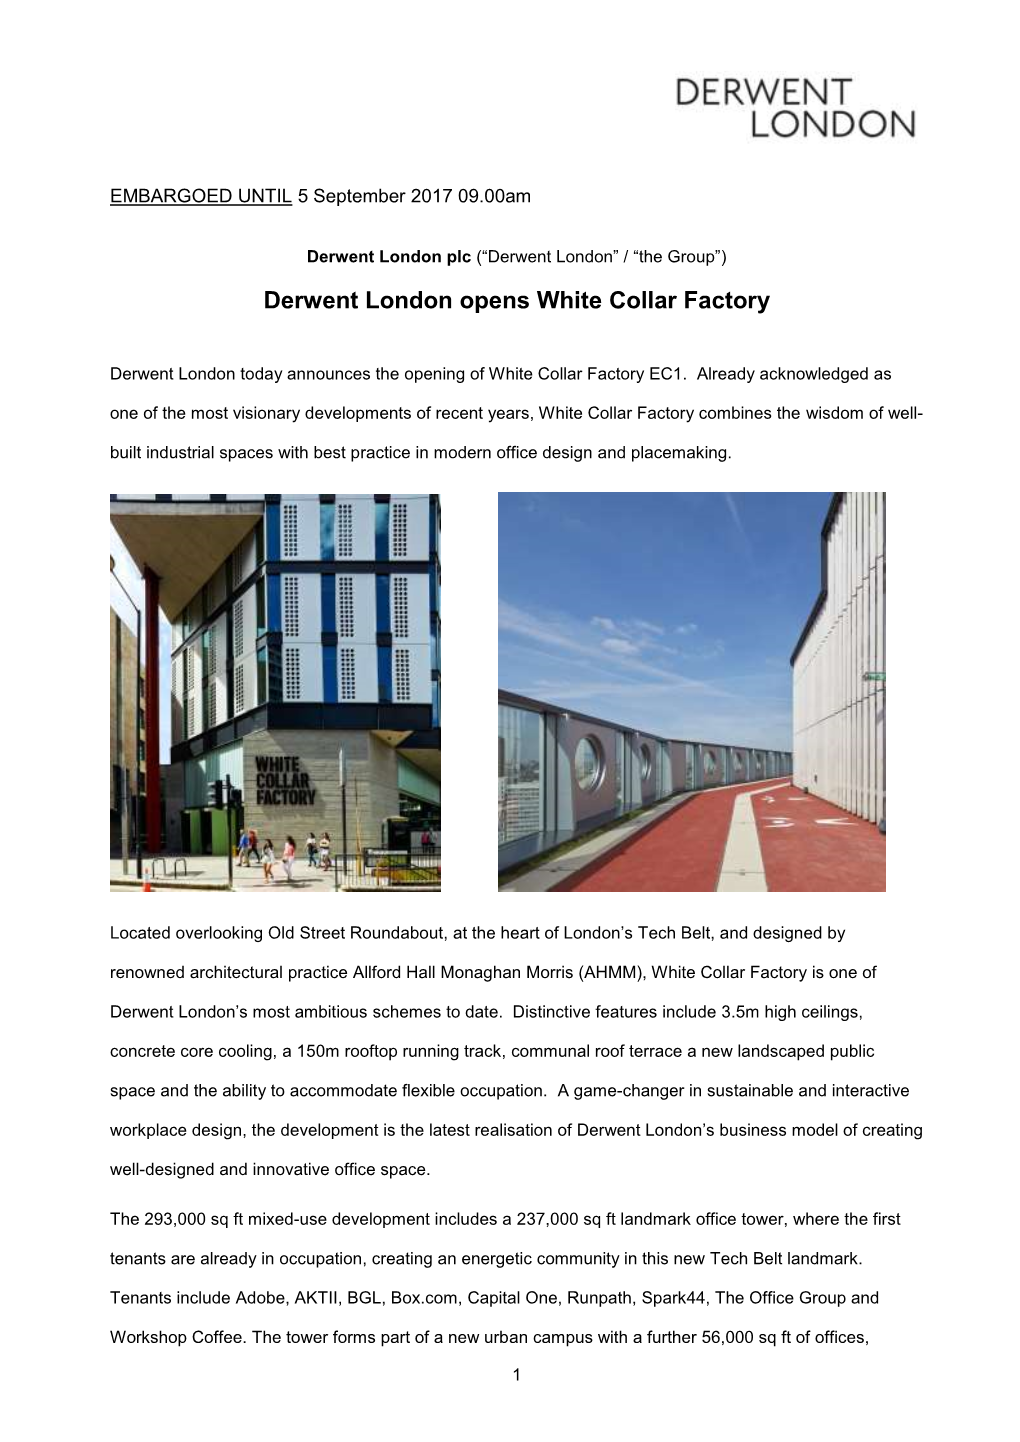 Derwent London Opens White Collar Factory